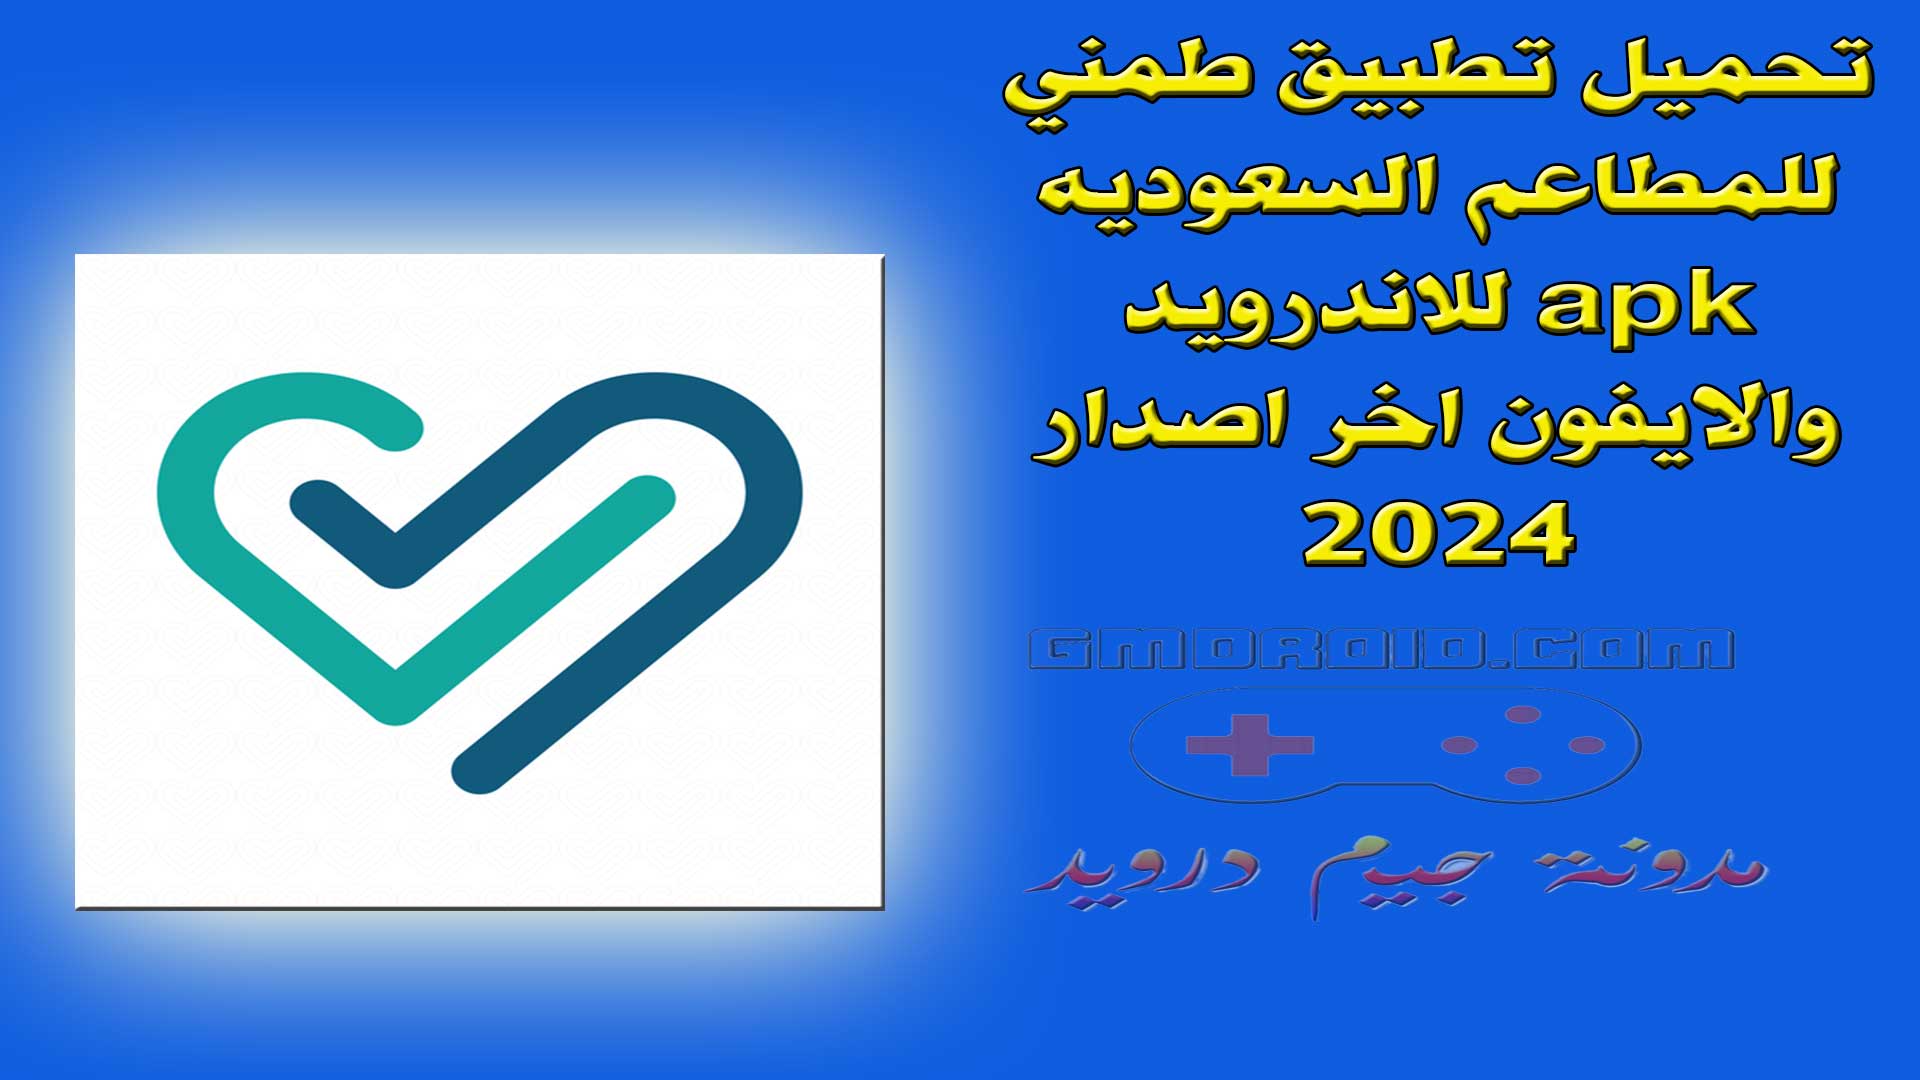 تحميل تطبيق طمني للمطاعم السعوديه apk للاندرويد والايفون اخر اصدار 2024